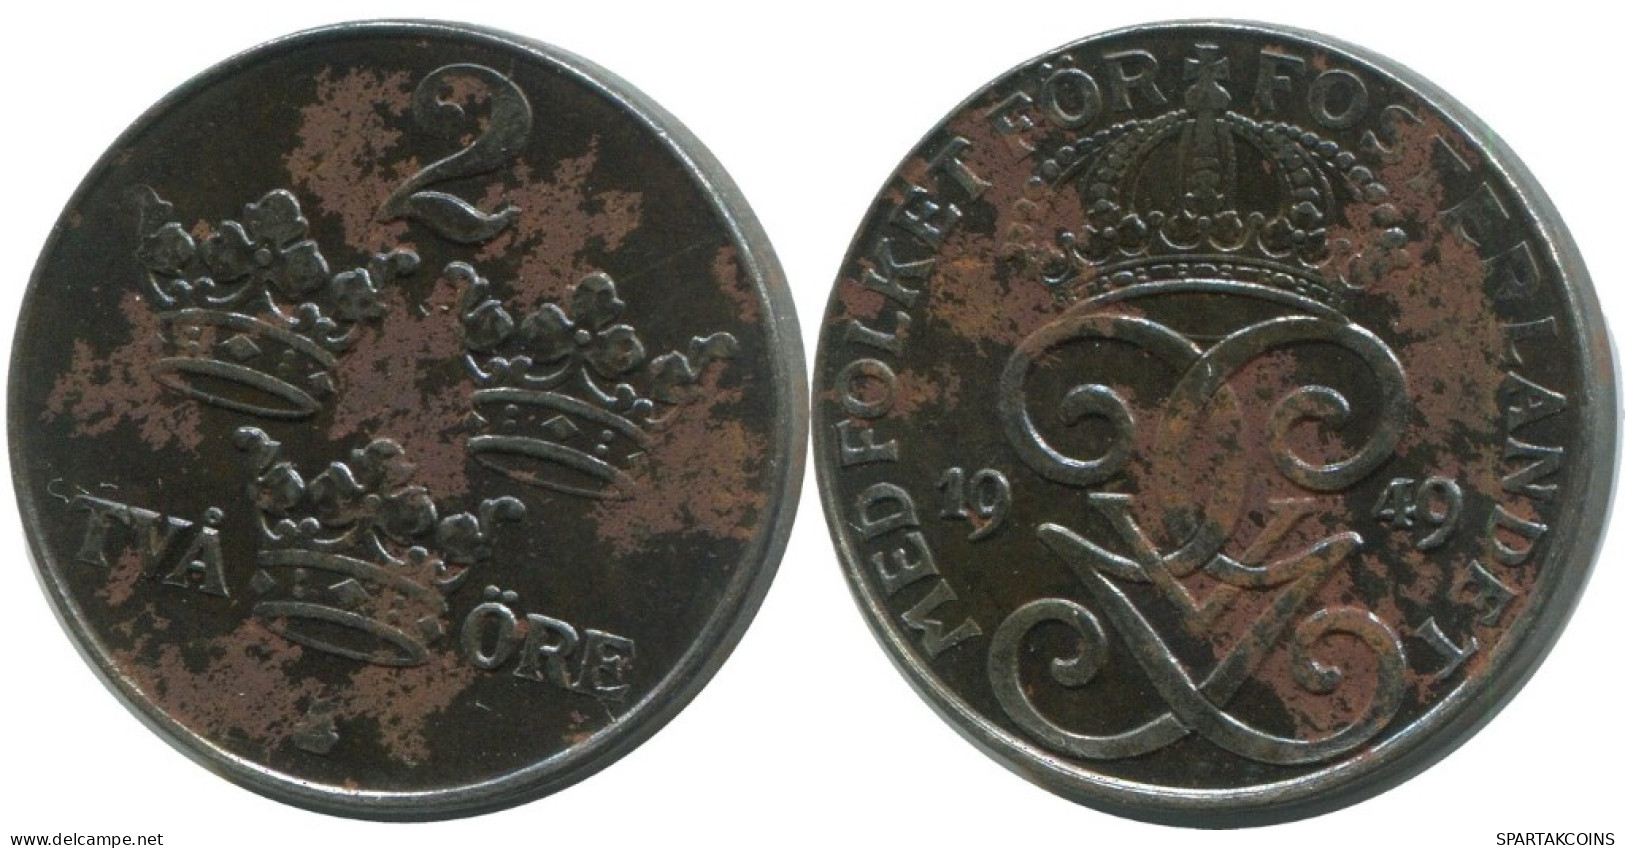 2 ORE 1949 SWEDEN Coin #AC731.2.U.A - Suède